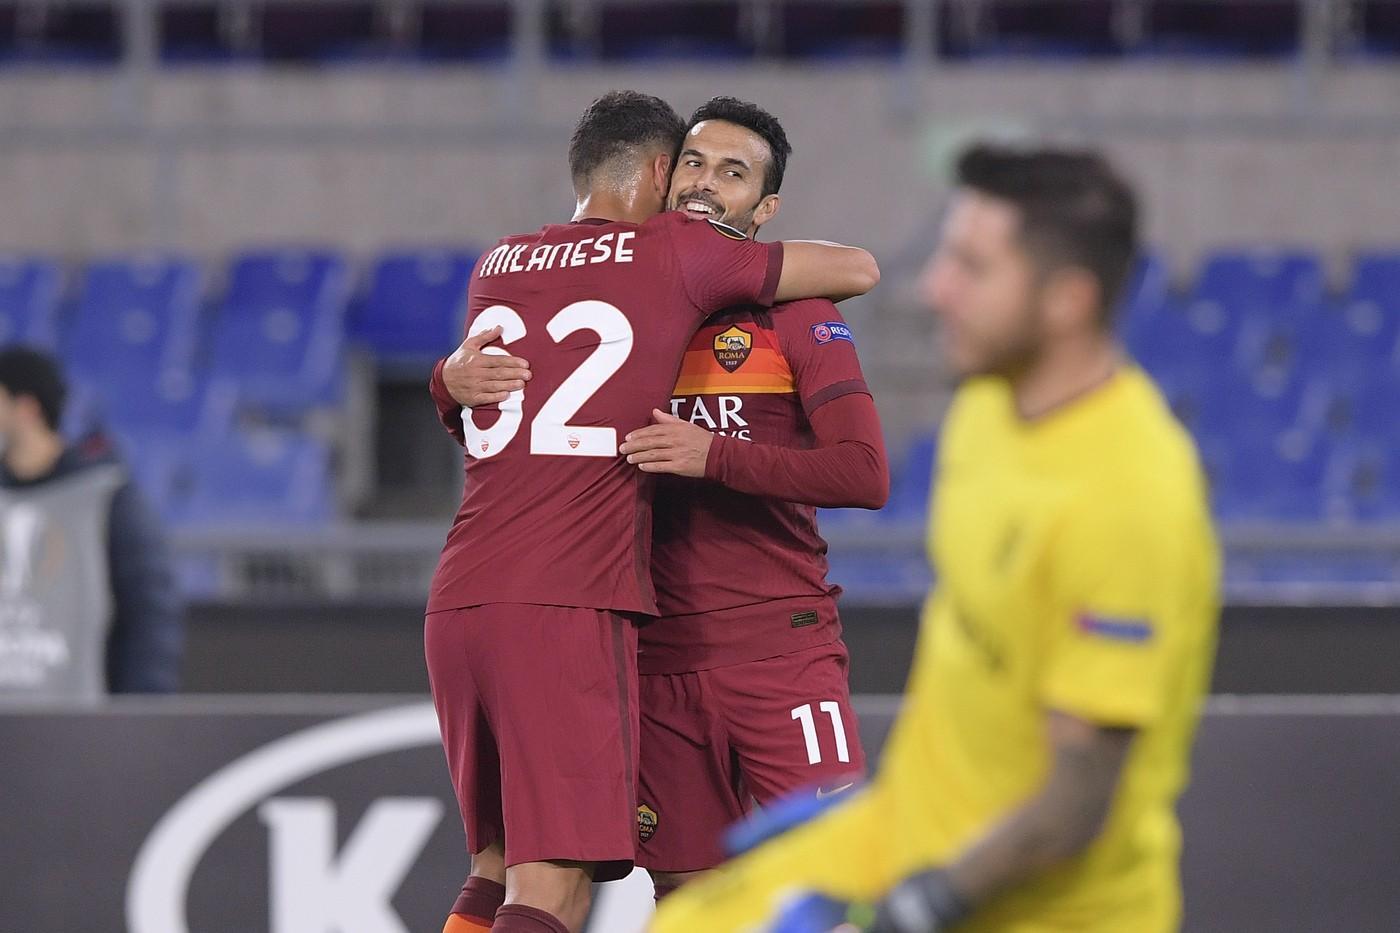 Pedro e Milanese esultano dopo il gol dello spagnolo contro il Cluj, di LaPresse